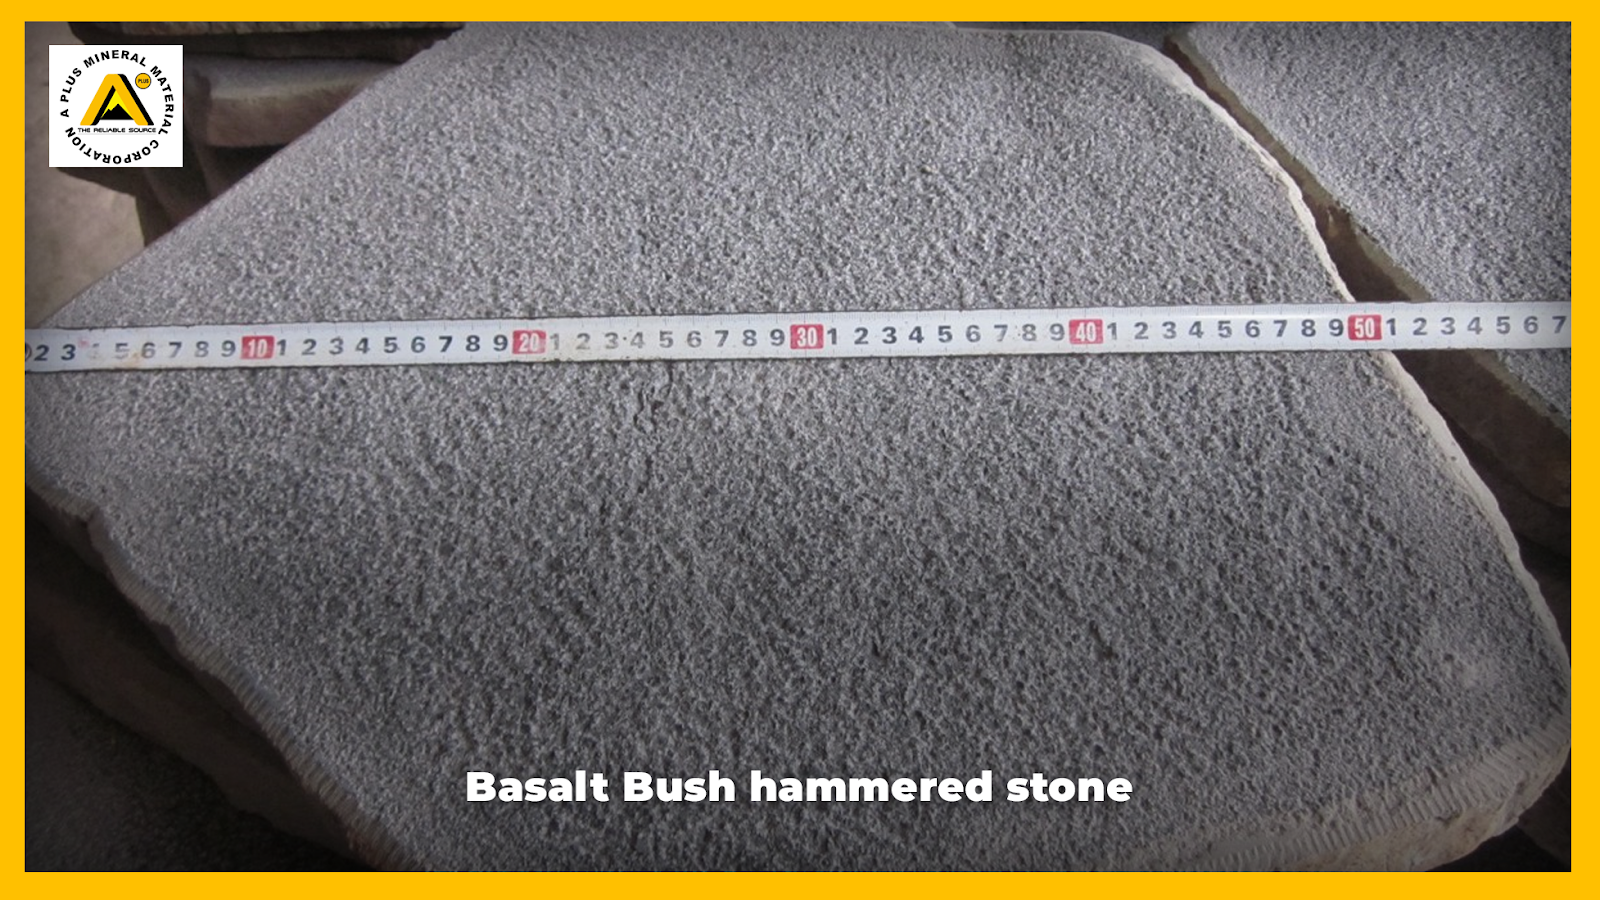 Basalt Bush hammered stone